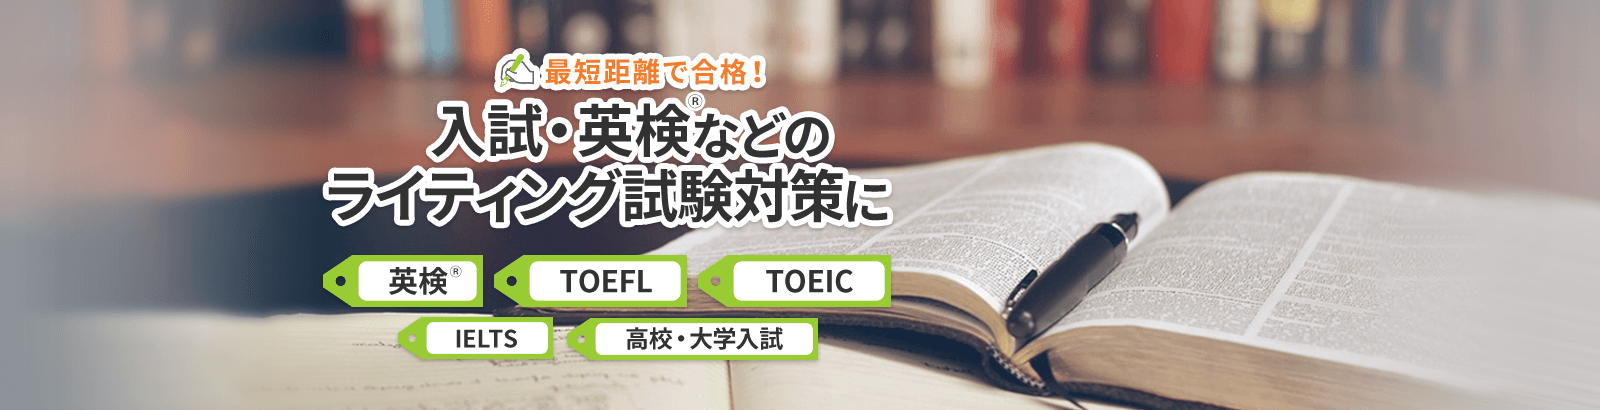 英検、TOEFL、TOEIC、IELTS、高校・大学入試などのライティング試験対策。ネイティブ講師・日本語講師から指導が受けられる